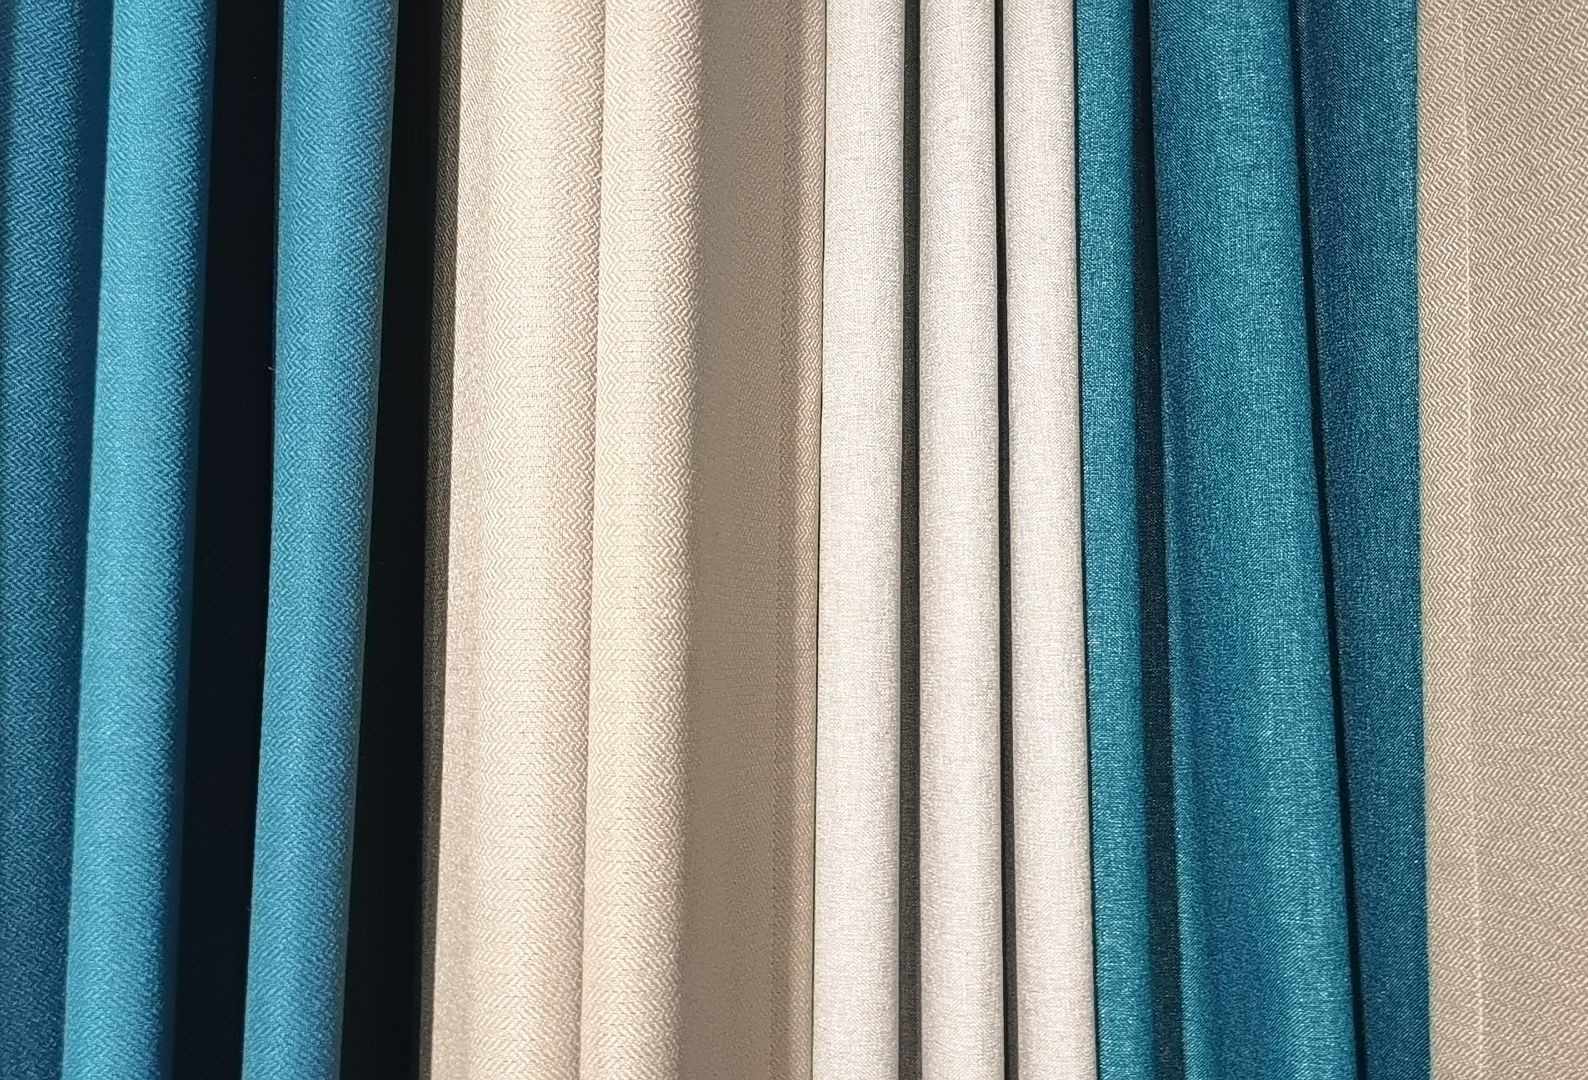 COTV全球直播-海宁市许村镇汉特纺织厂主要生产百分百全遮光棉麻素色窗帘布，欢迎大家光临！